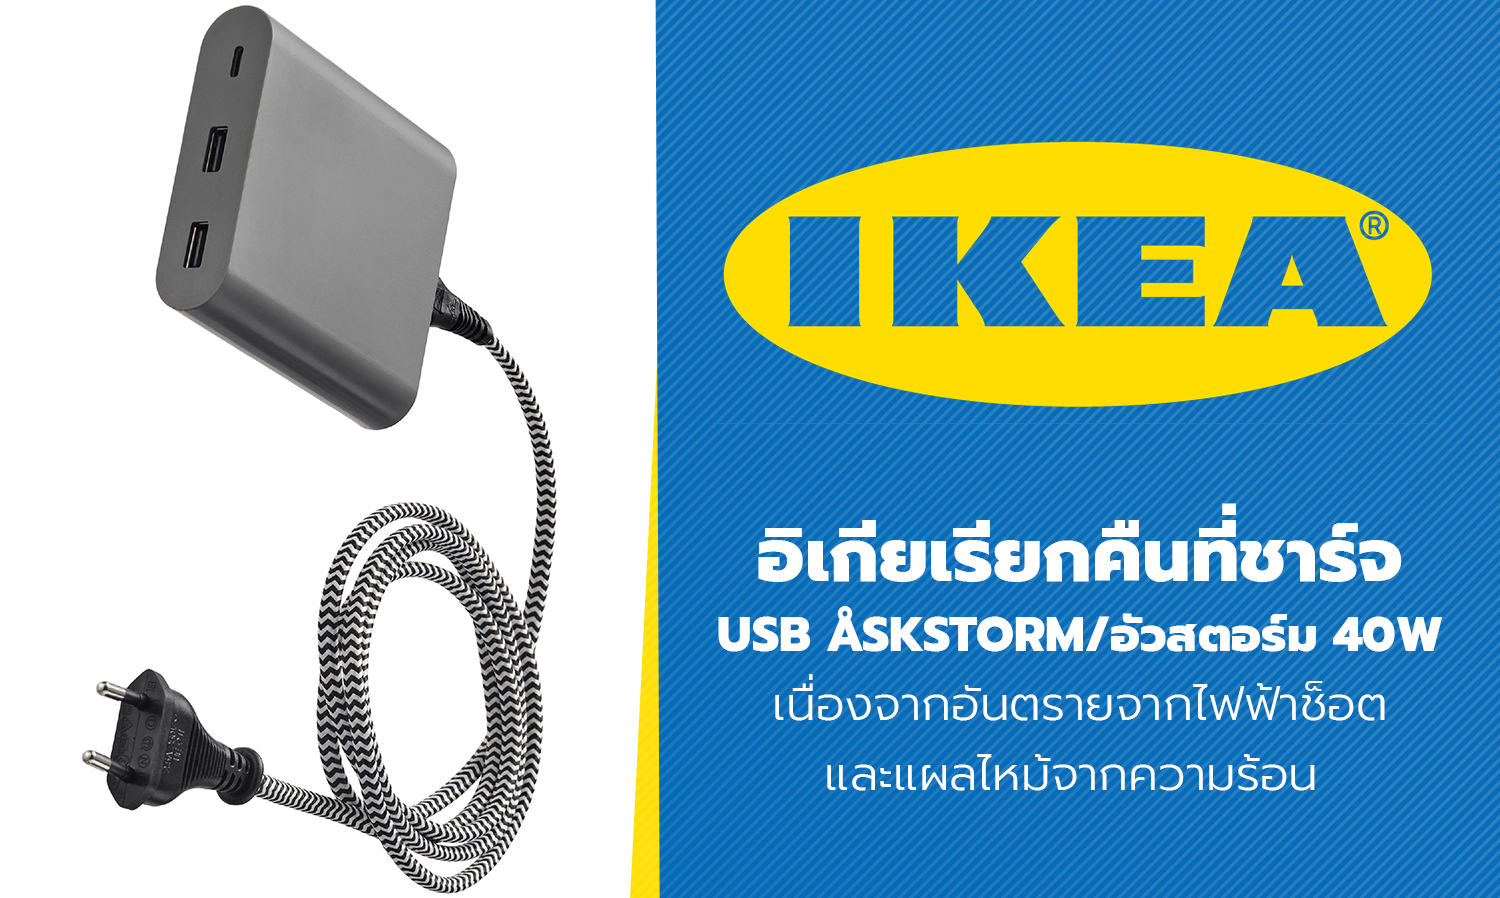 อิเกียเรียกคืนที่ชาร์จ USB ASKSTORM/อัวสตอร์ม 40W เนื่องจากอันตรายจากไฟฟ้าช็อตและแผลไหม้จากความร้อน